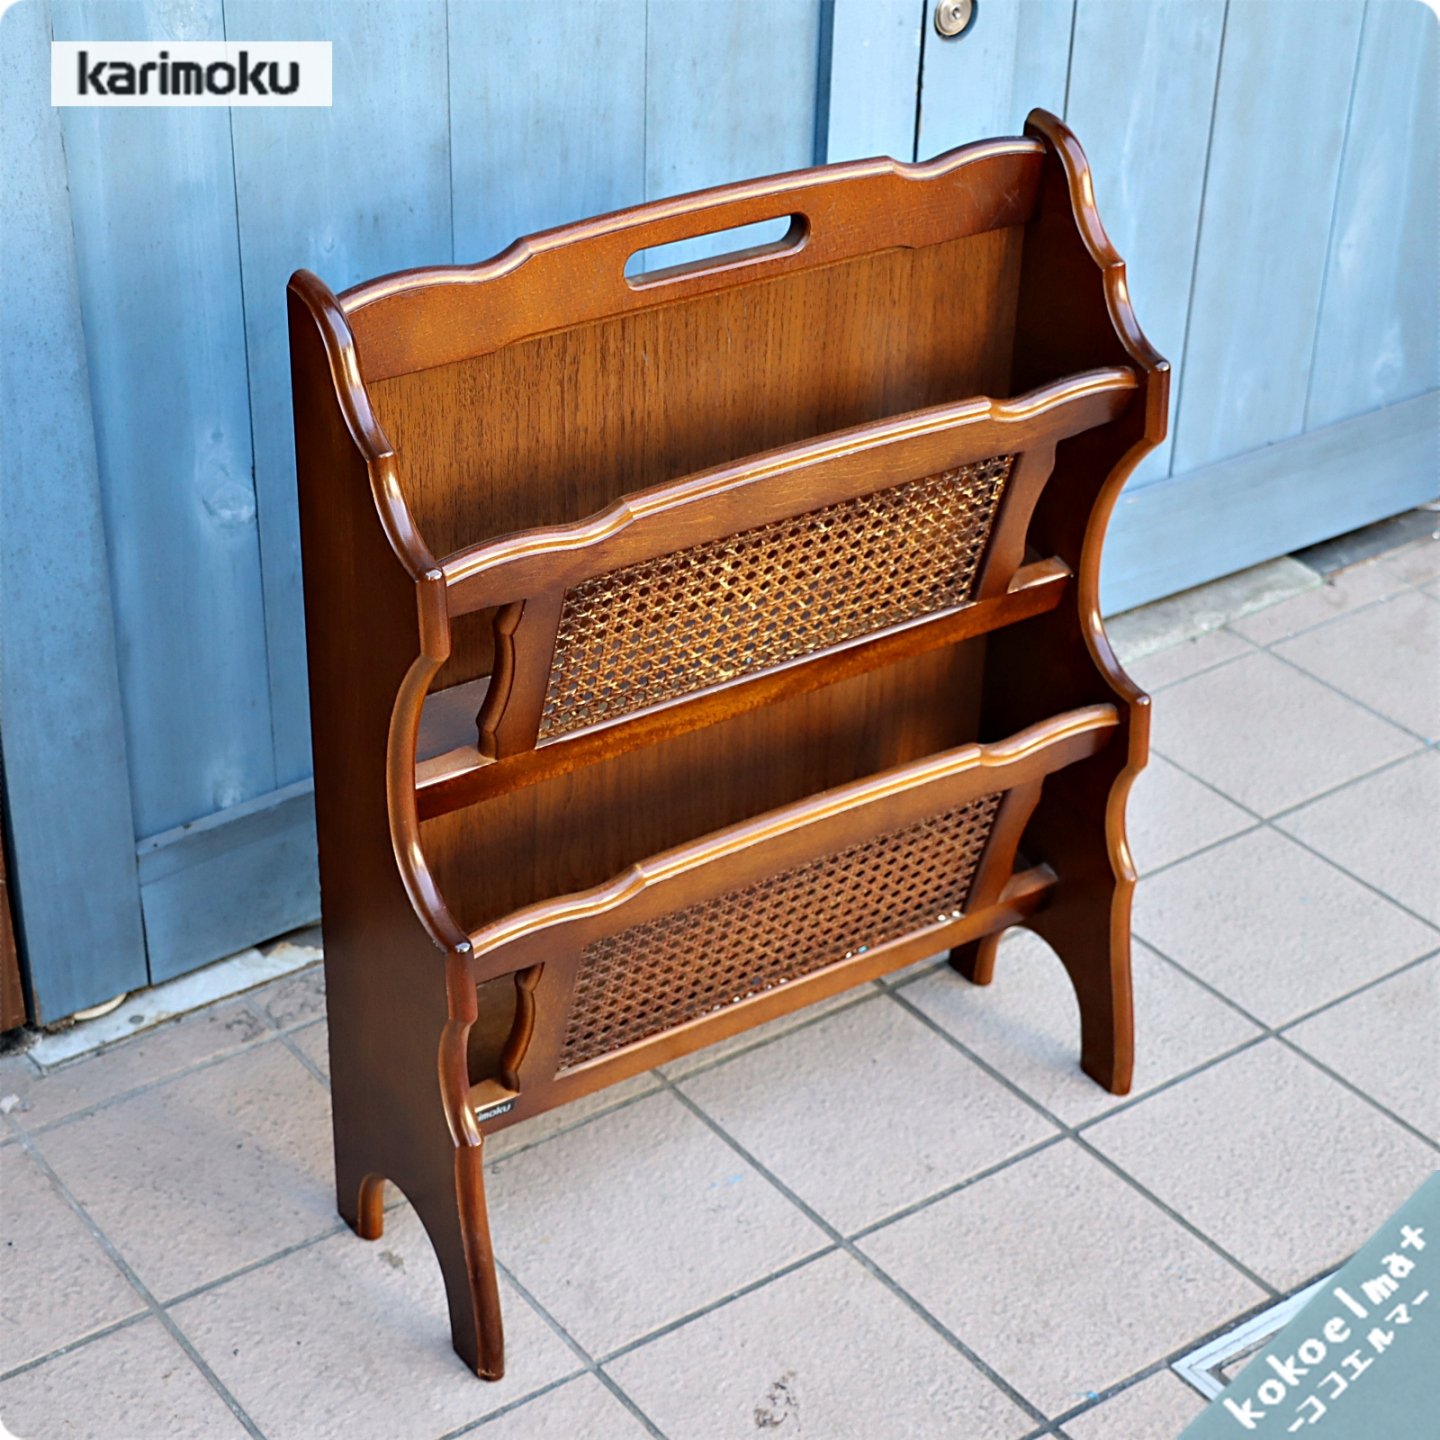 Karimoku(カリモク家具)のCOLONIAL(コロニアル)シリーズ  マガジンラックです。アメリカンカントリースタイルのクラシカルなデザインはお部屋を上品な印象に。インテリアのアクセントにも♪ - kokoelma　 -ココエルマ- 